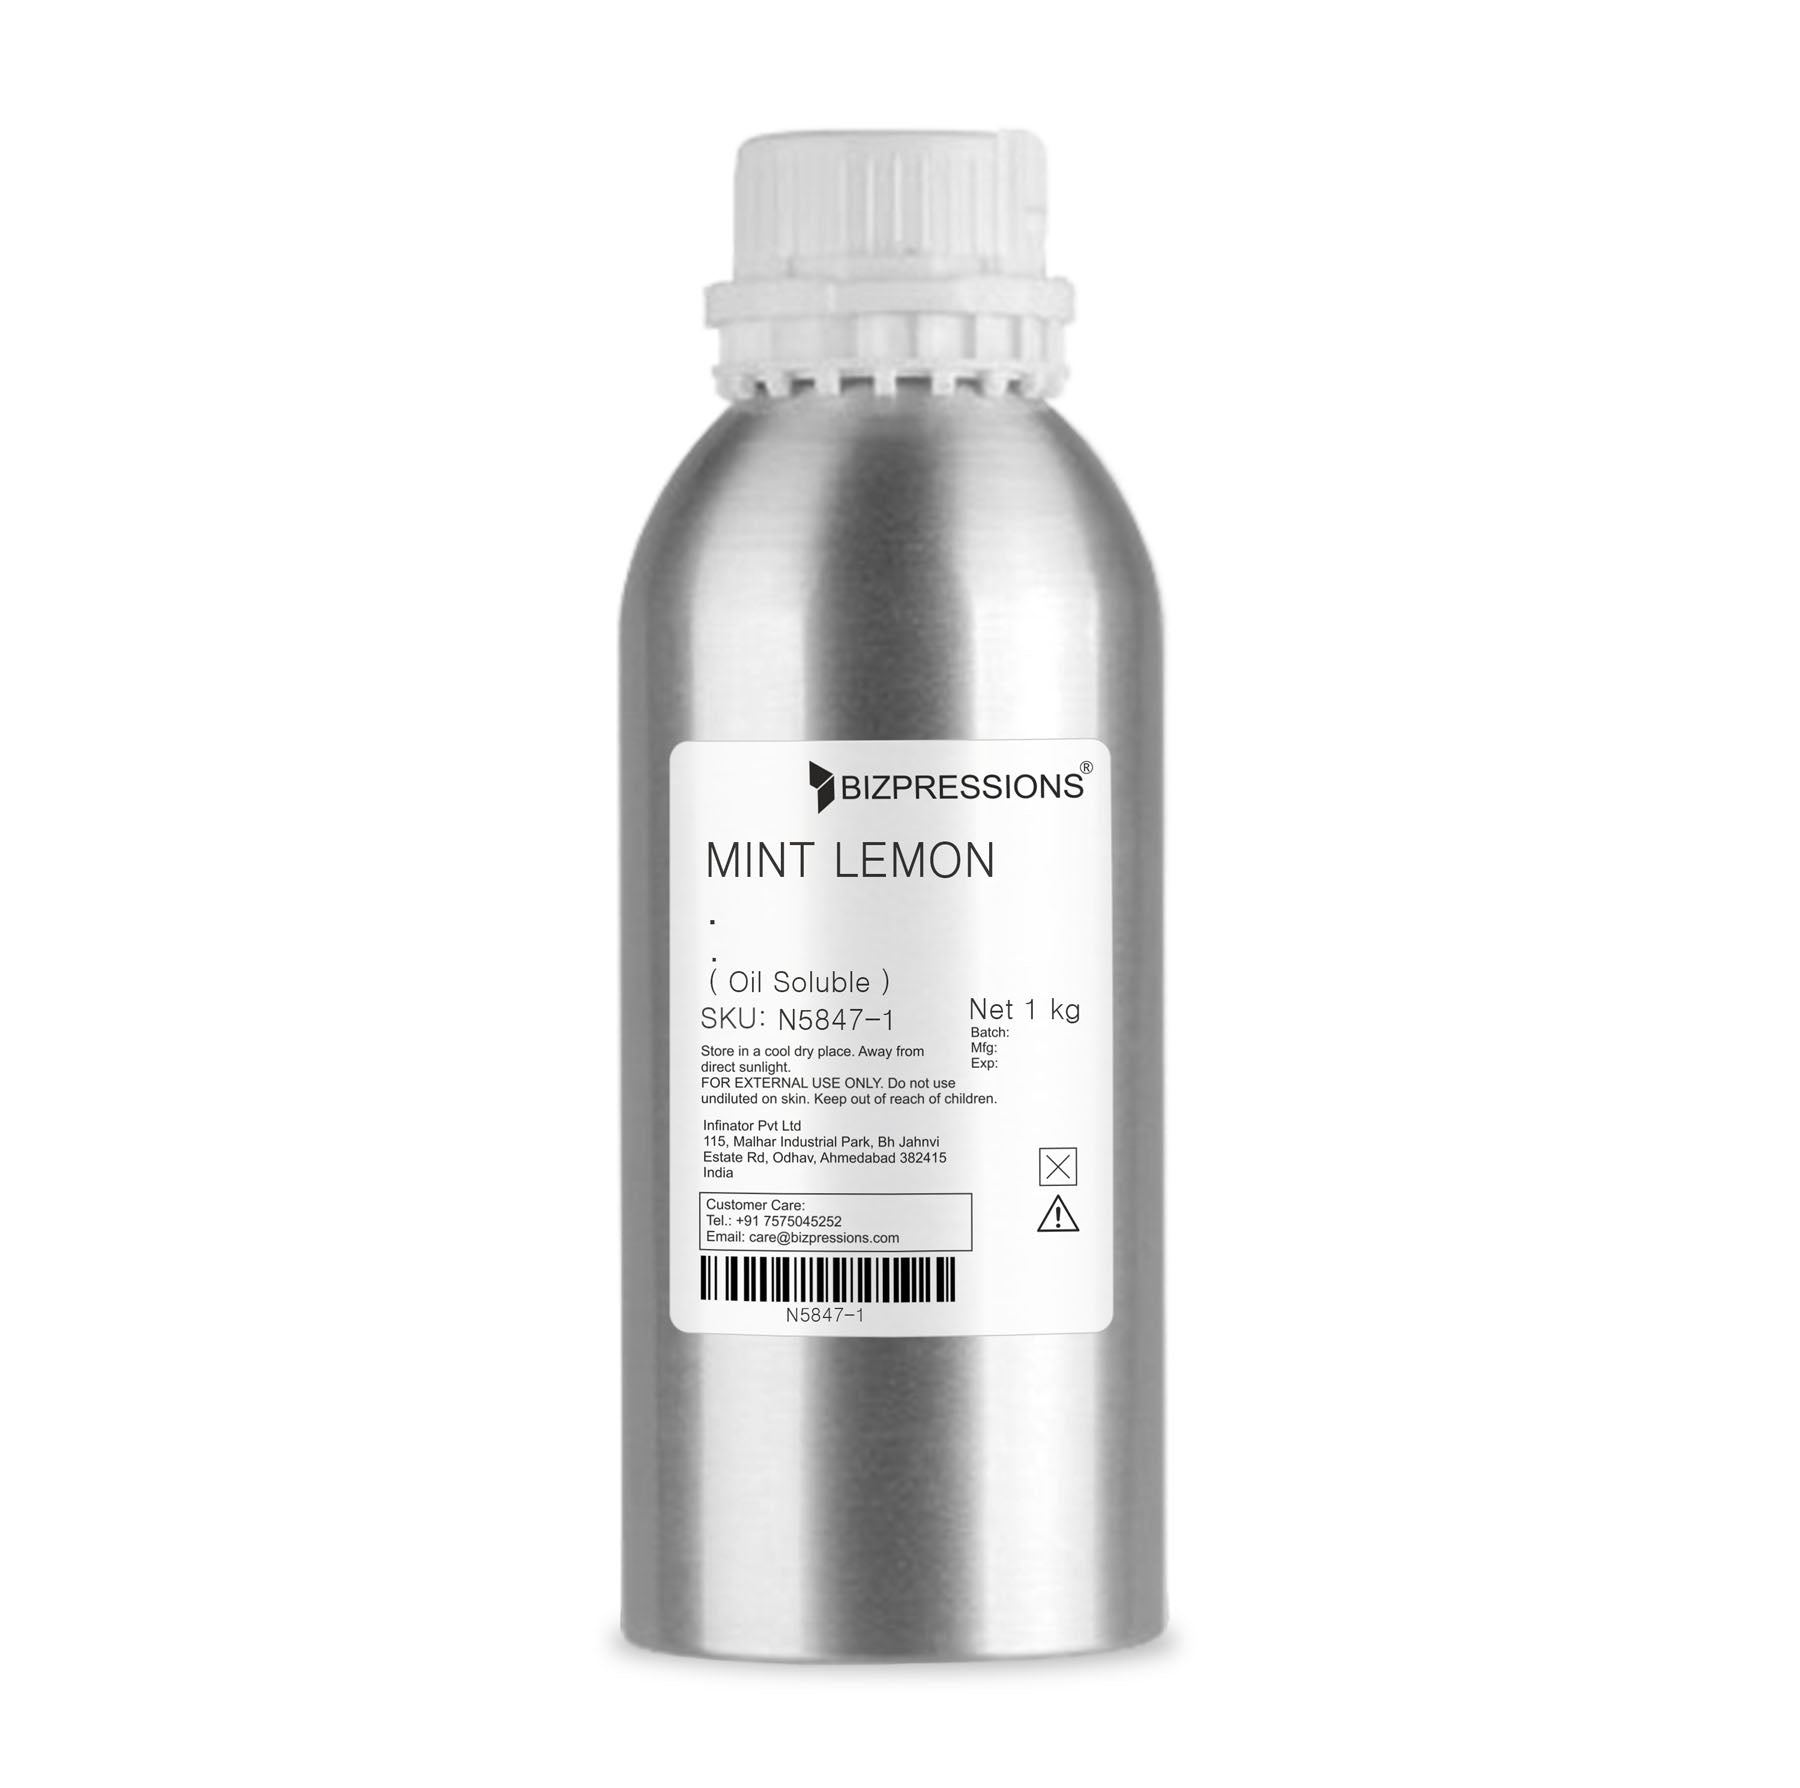 MINT LEMON - Fragrance ( Oil Soluble ) - 1 kg